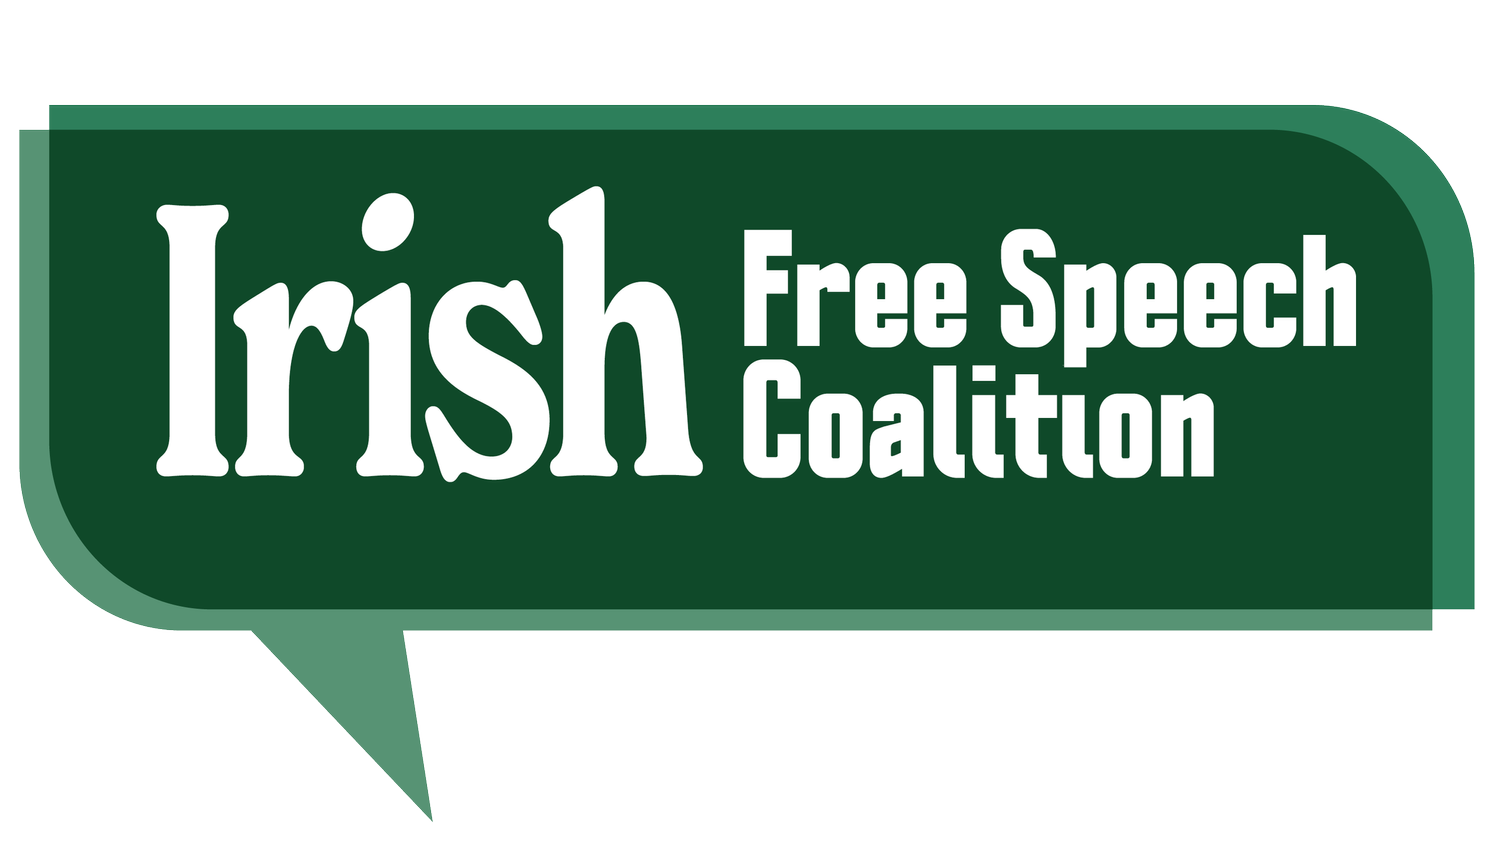 Irish Free Speech Coalition